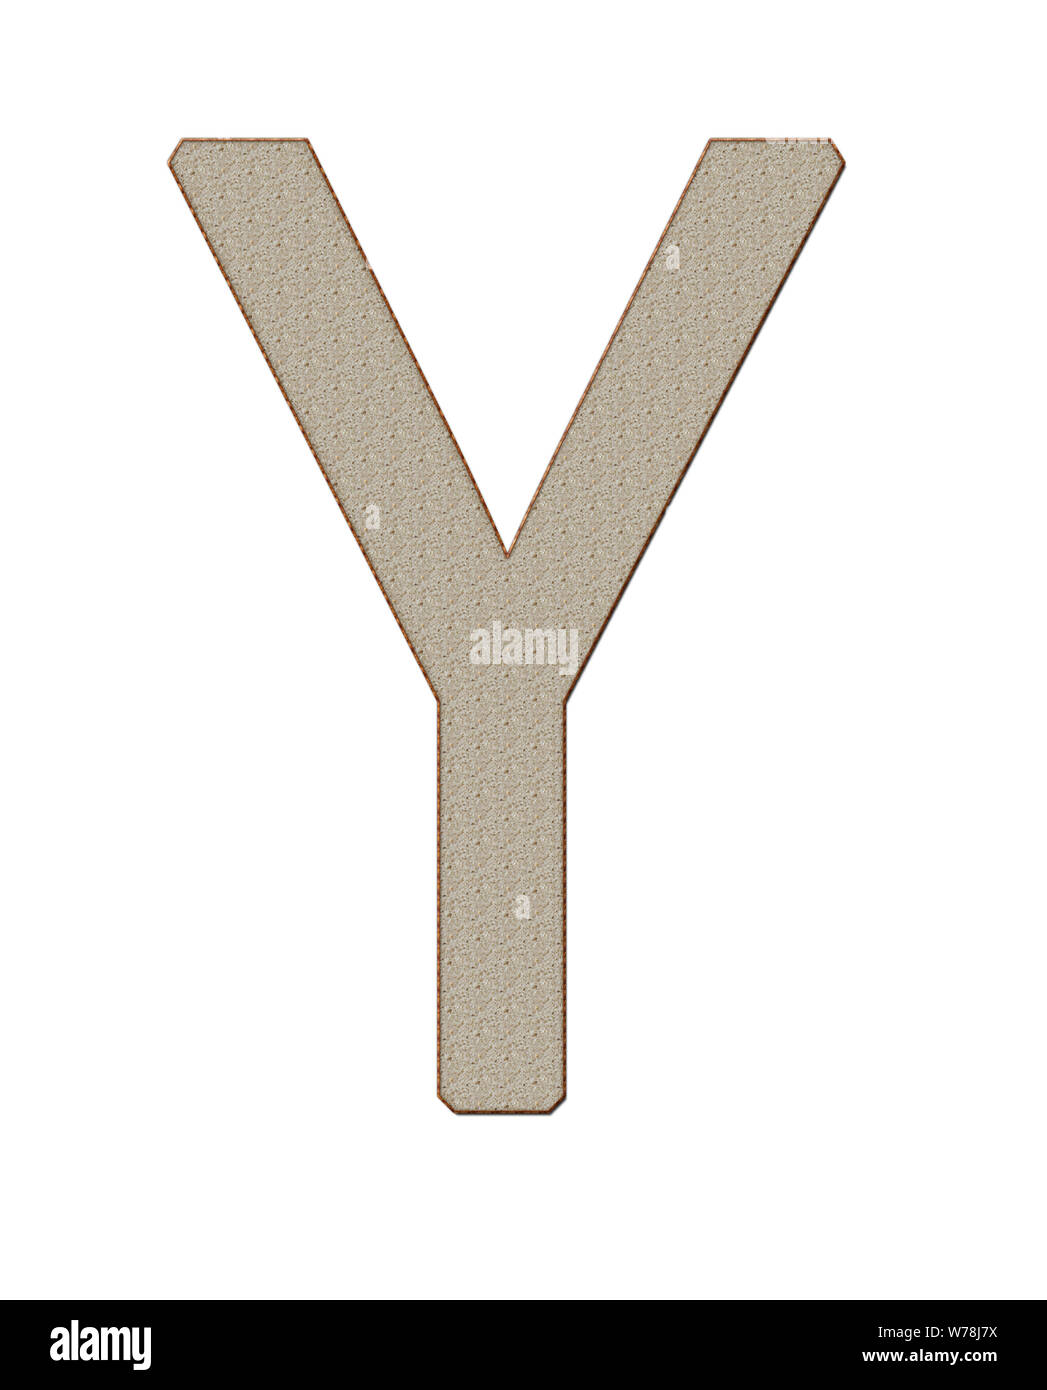 Bannière avec produits du pain alphabet XXL lettre de l'alphabet Home sur fond blanc. Photo isolée Banque D'Images